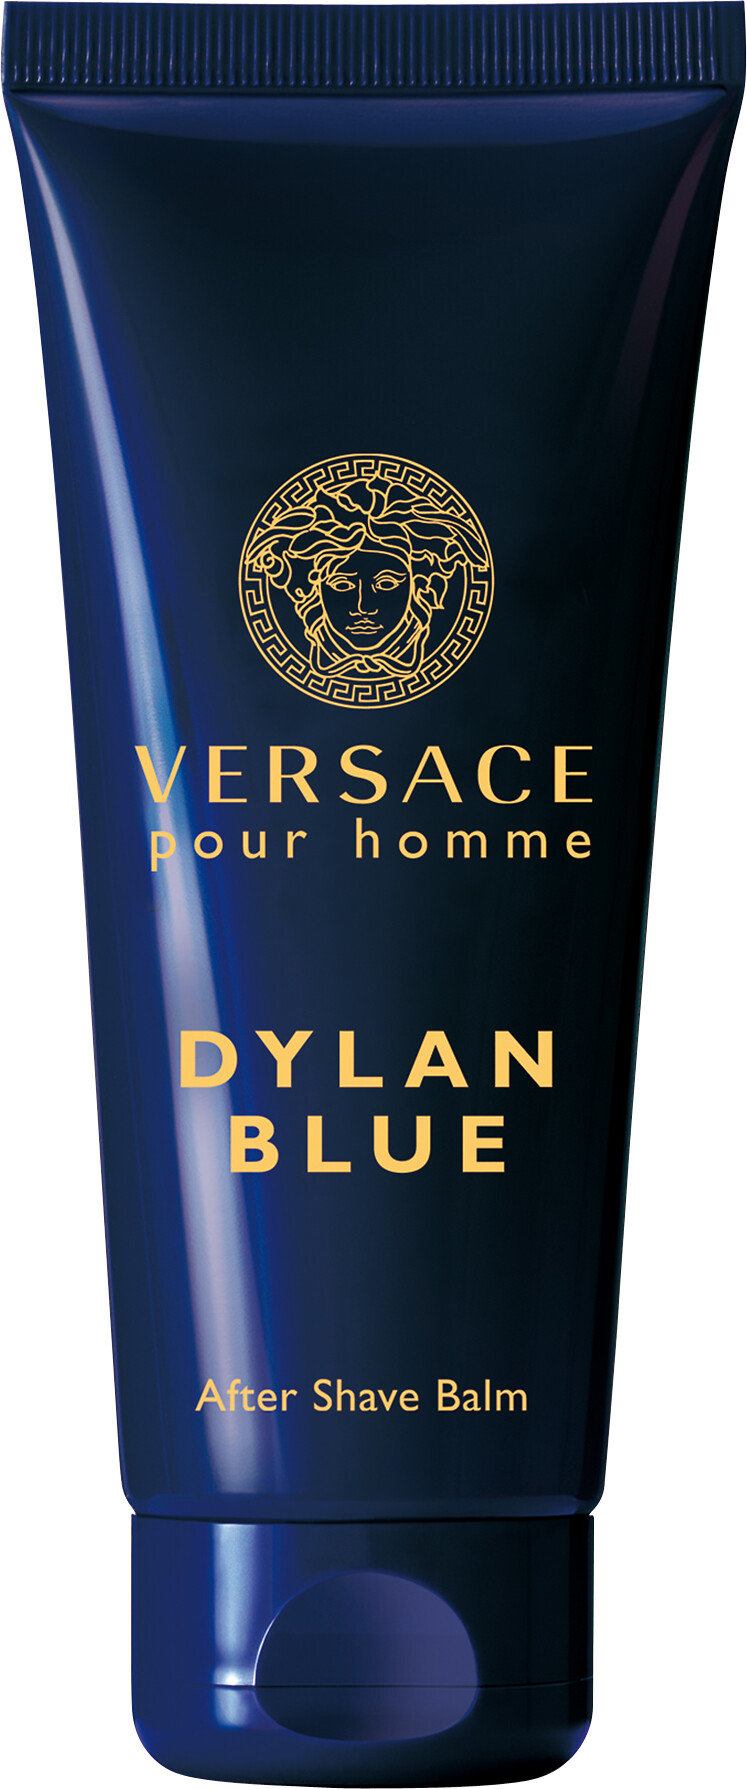 dylan blue after shave balm